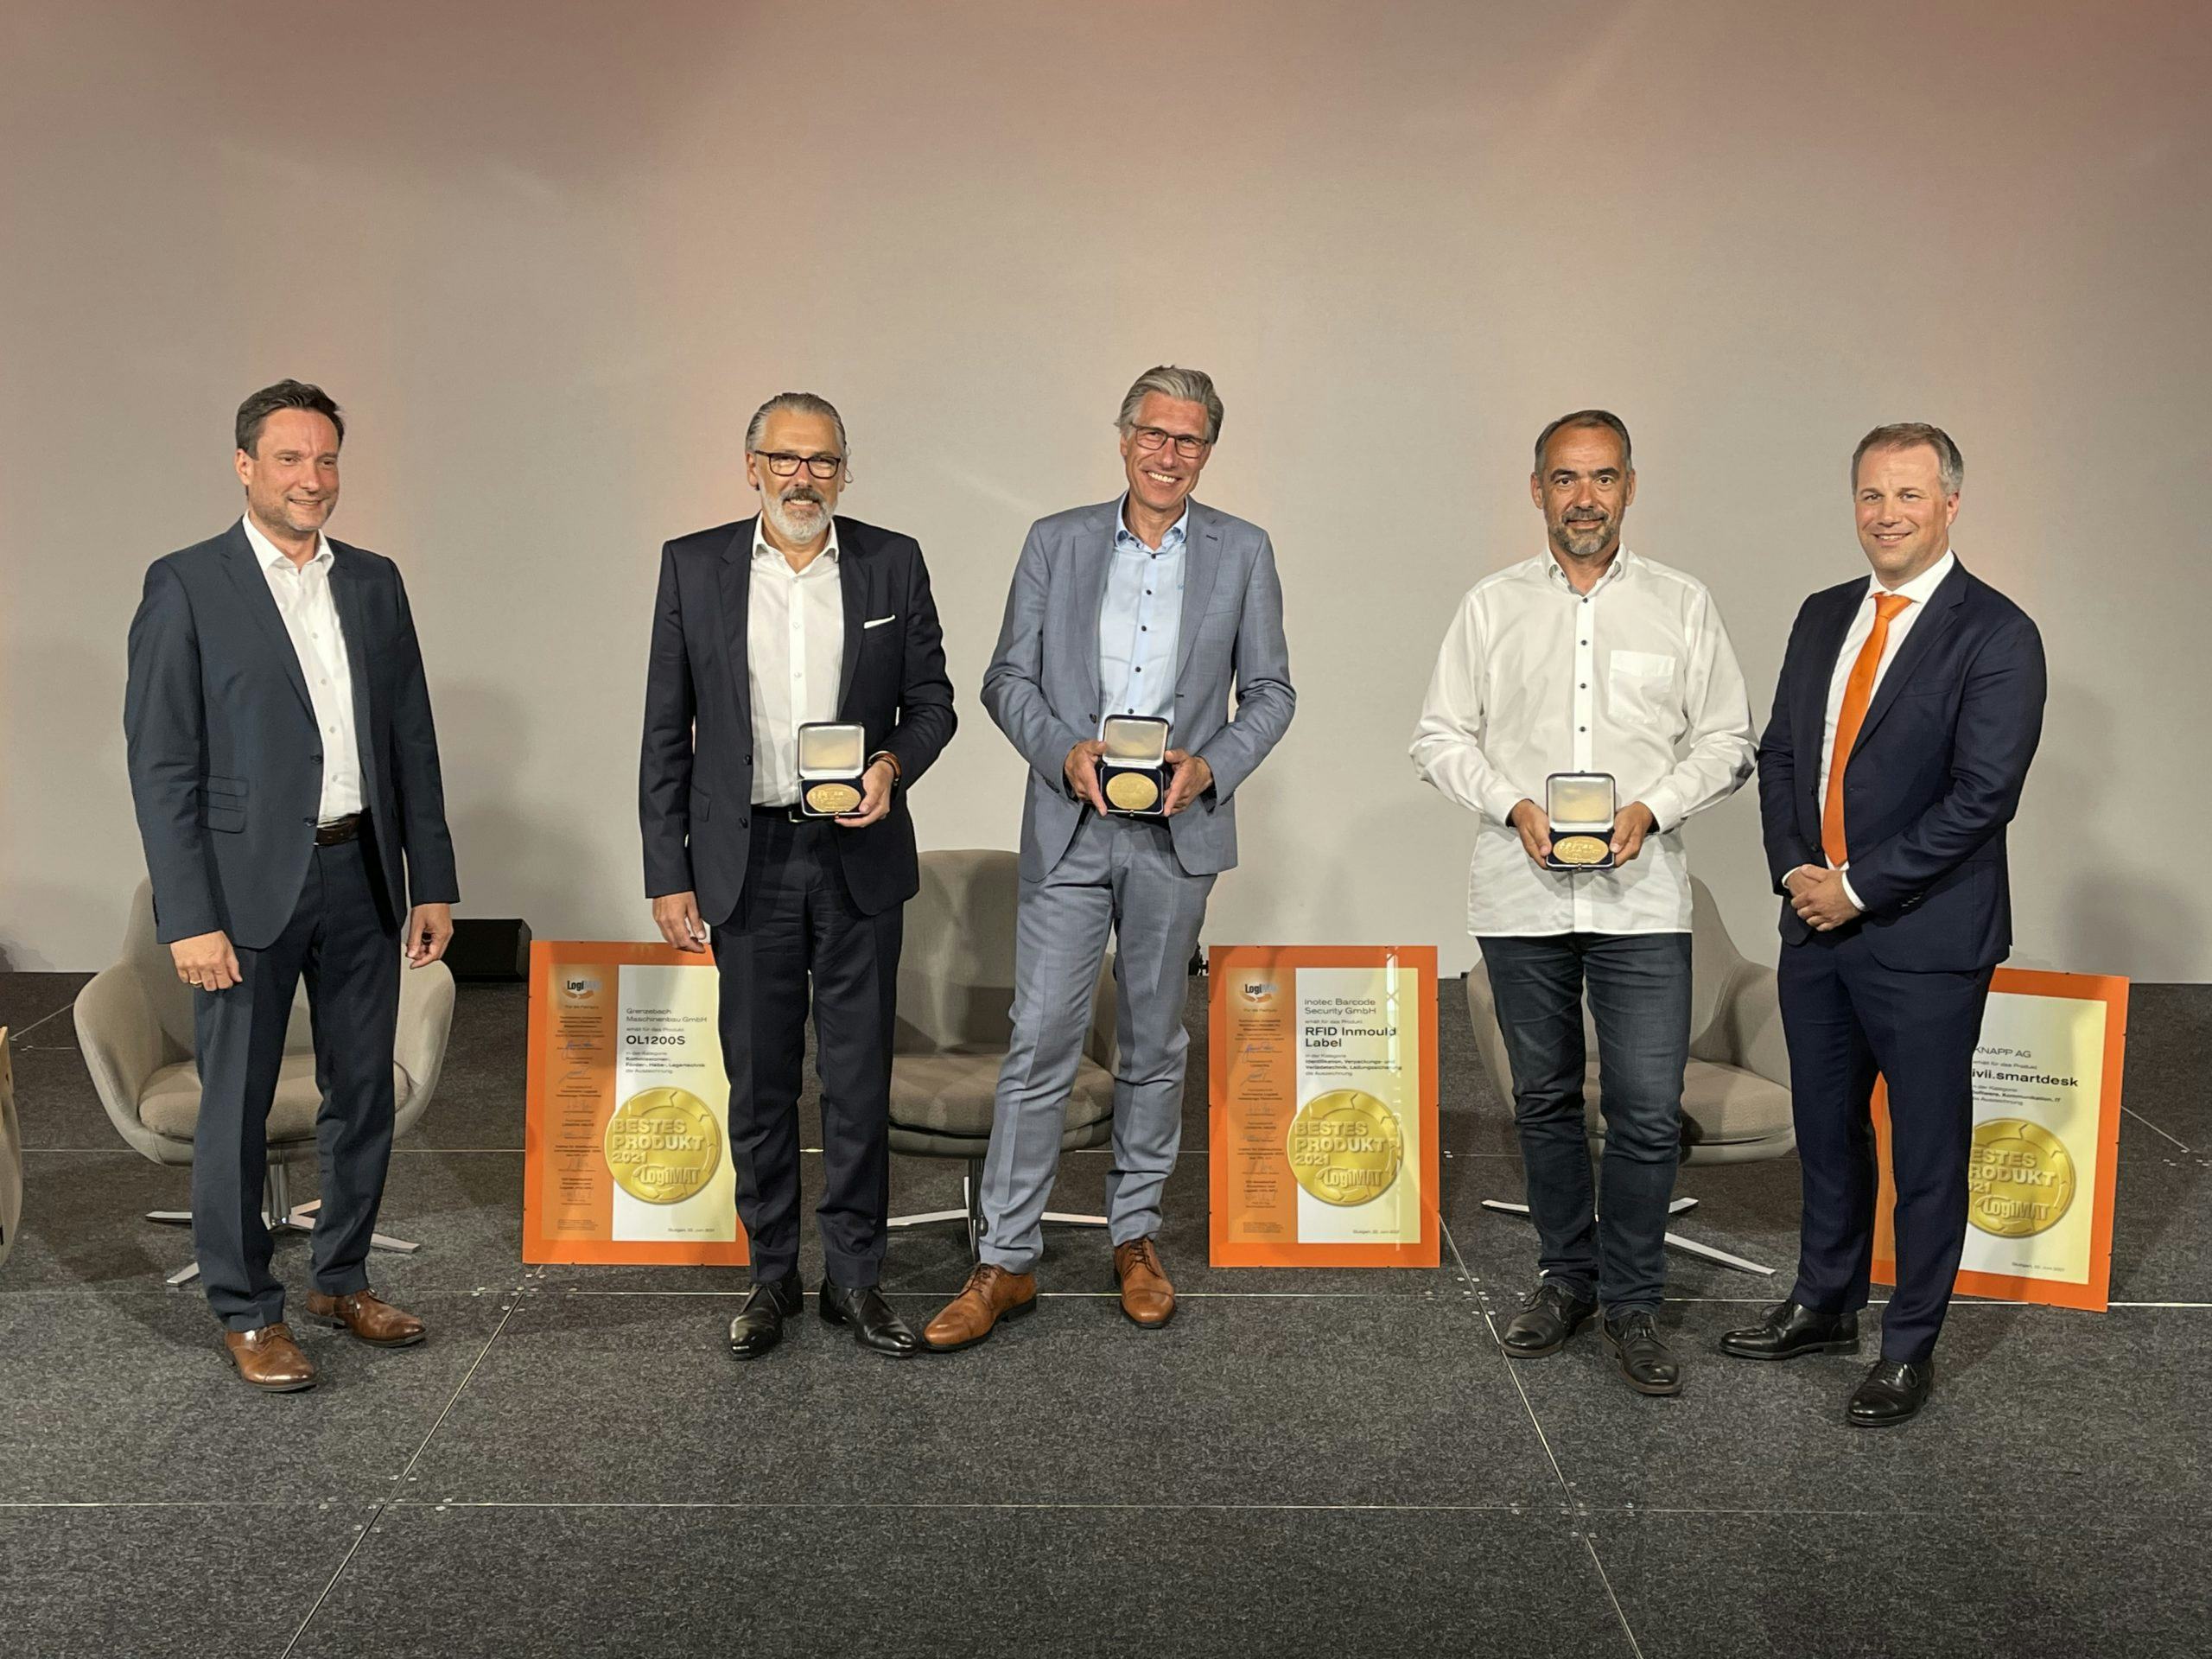 Knapp, Grenzebach en Inotec winnen Beste Product Award Logimat 2021